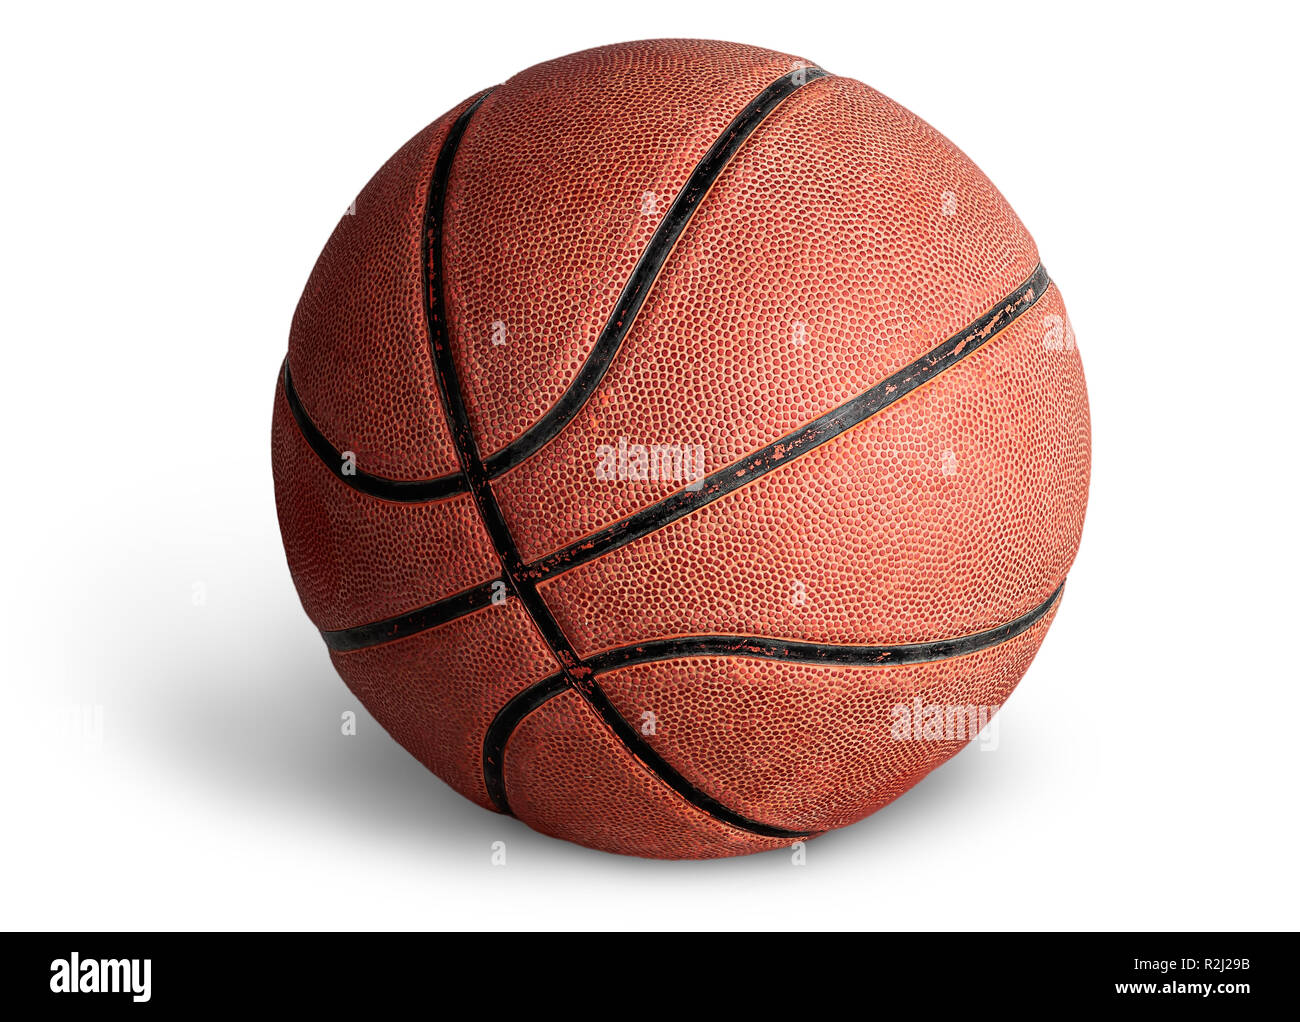 Vecchia sfera di pallacanestro Foto Stock